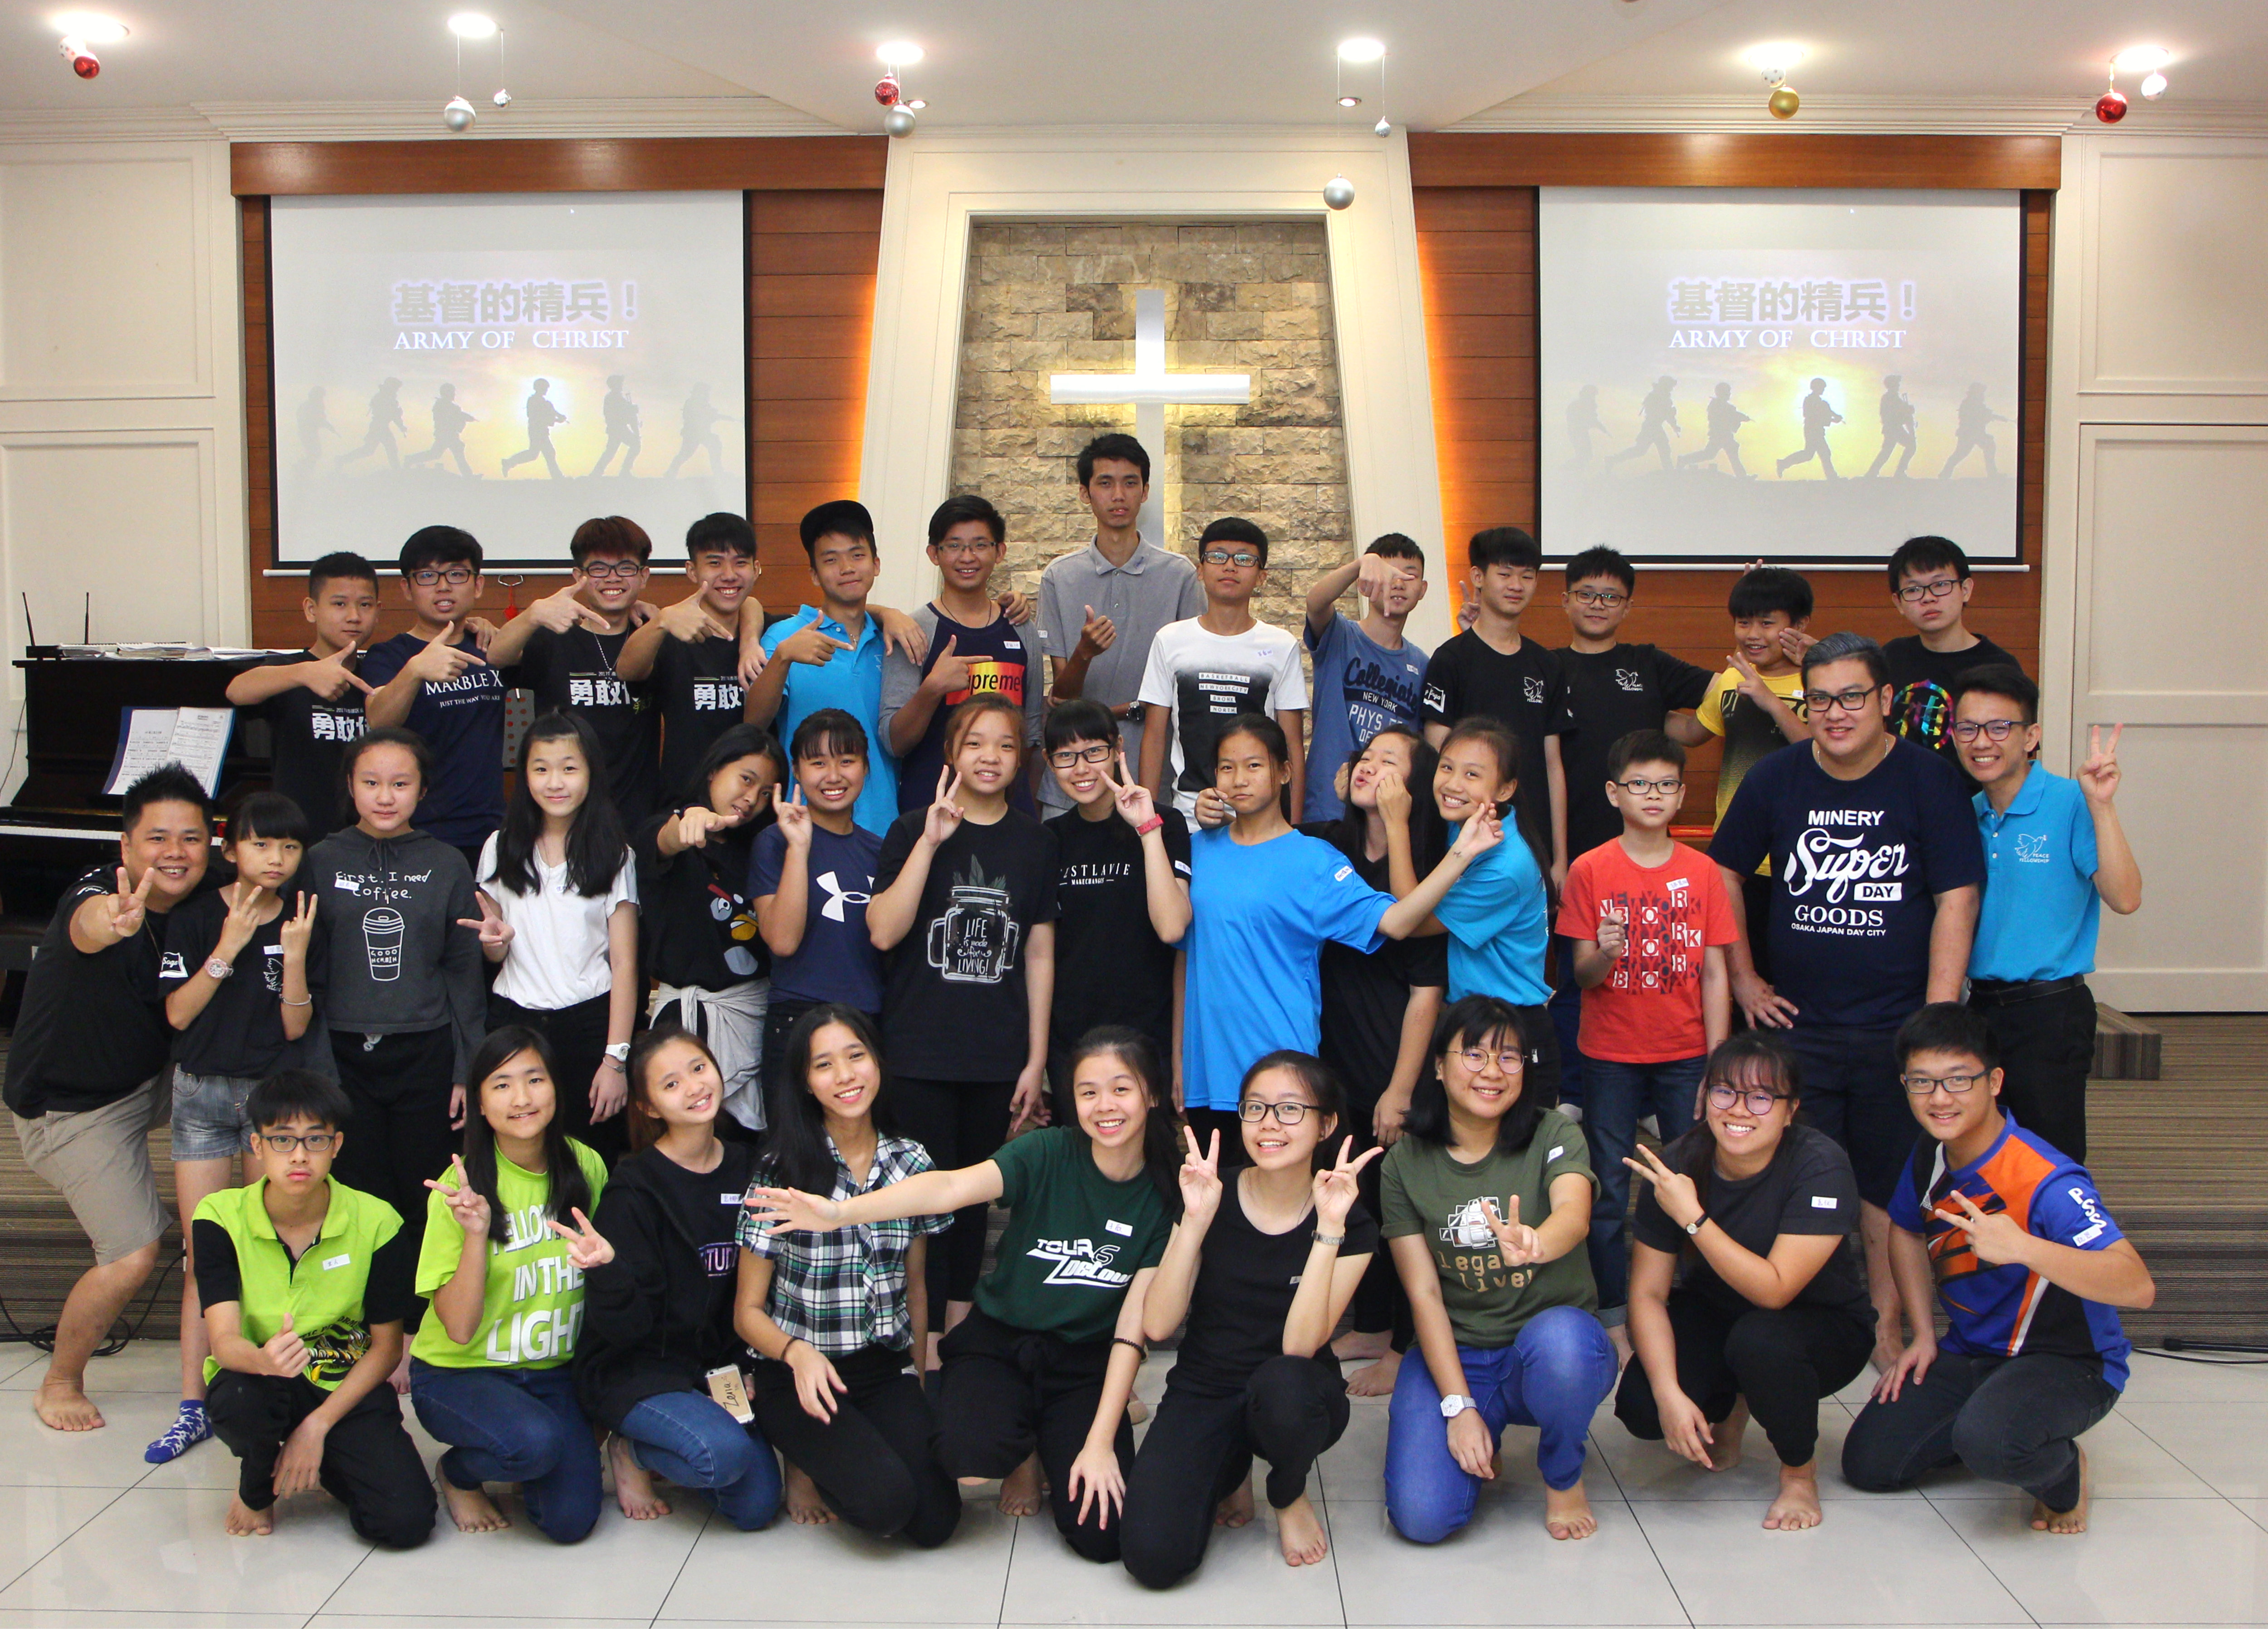 马来西亚 柔佛 峇株巴辖 苏雅喜乐堂 和平团契 一日营会 3月 23日 2018年 马来西亚门训生 Malaysia Johor Batu Pahat Gereja Joy Soga Peace Fellowship One Day Camp 23 Mar 2018 A06